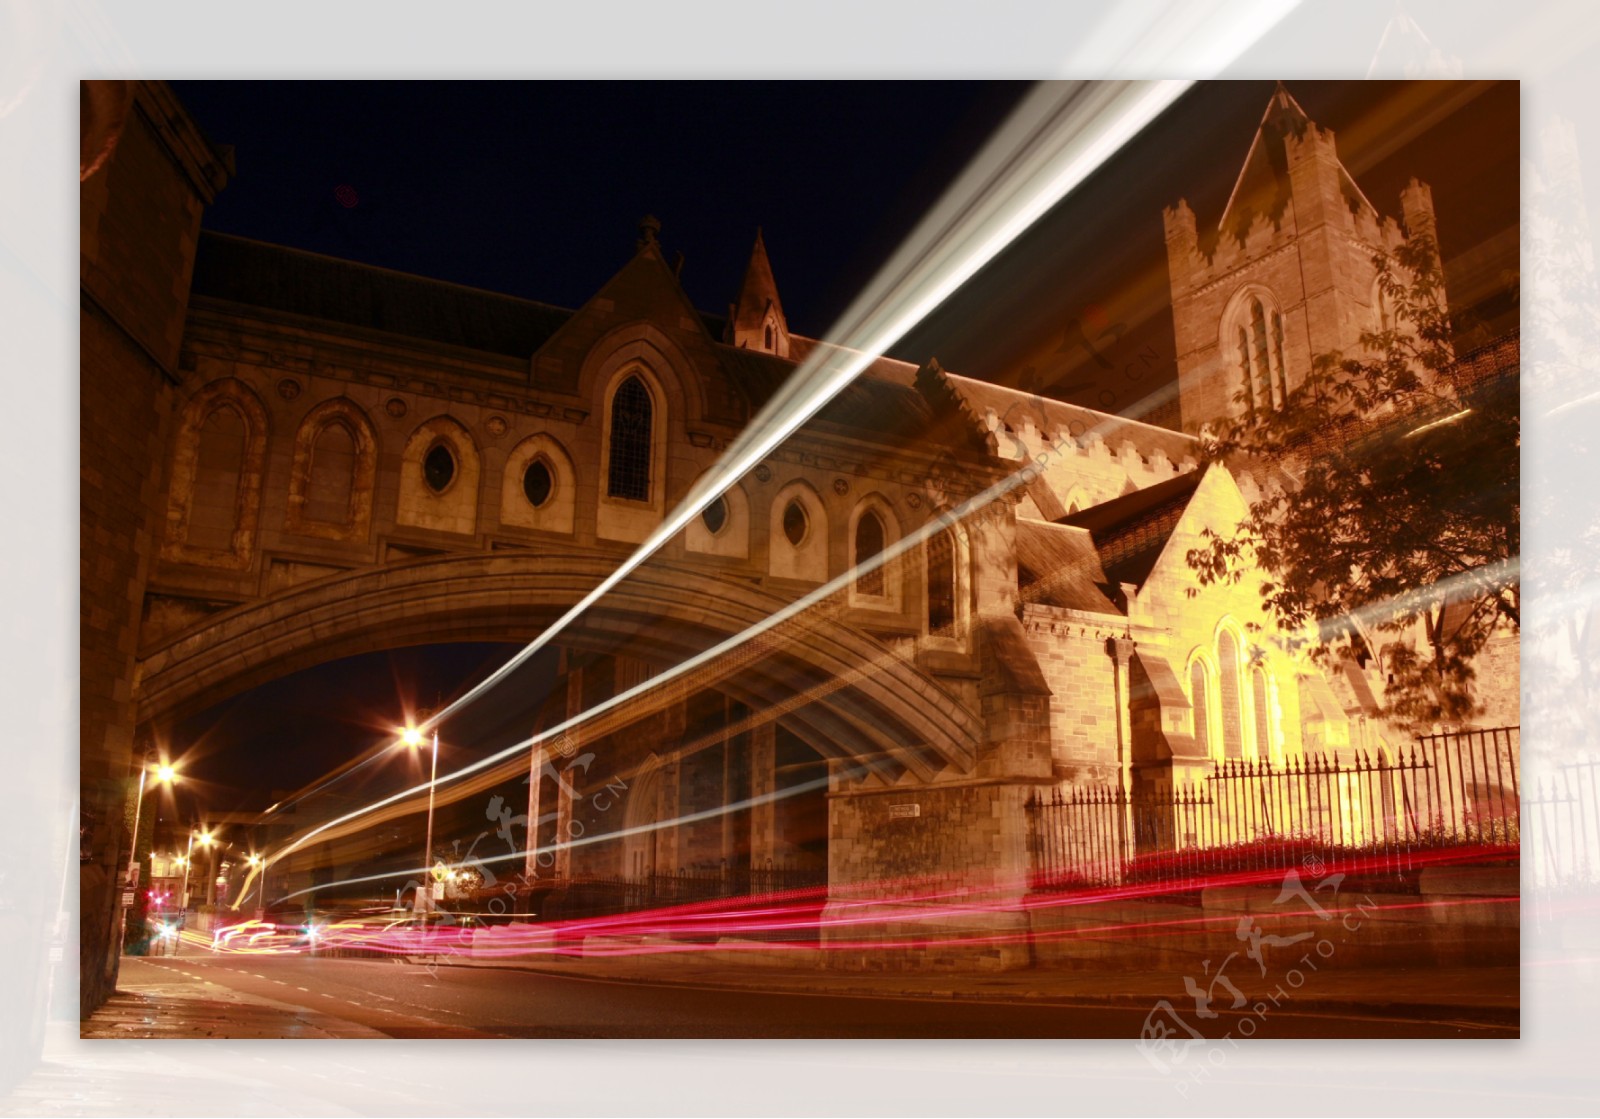 在都柏林的夜间交通大教堂